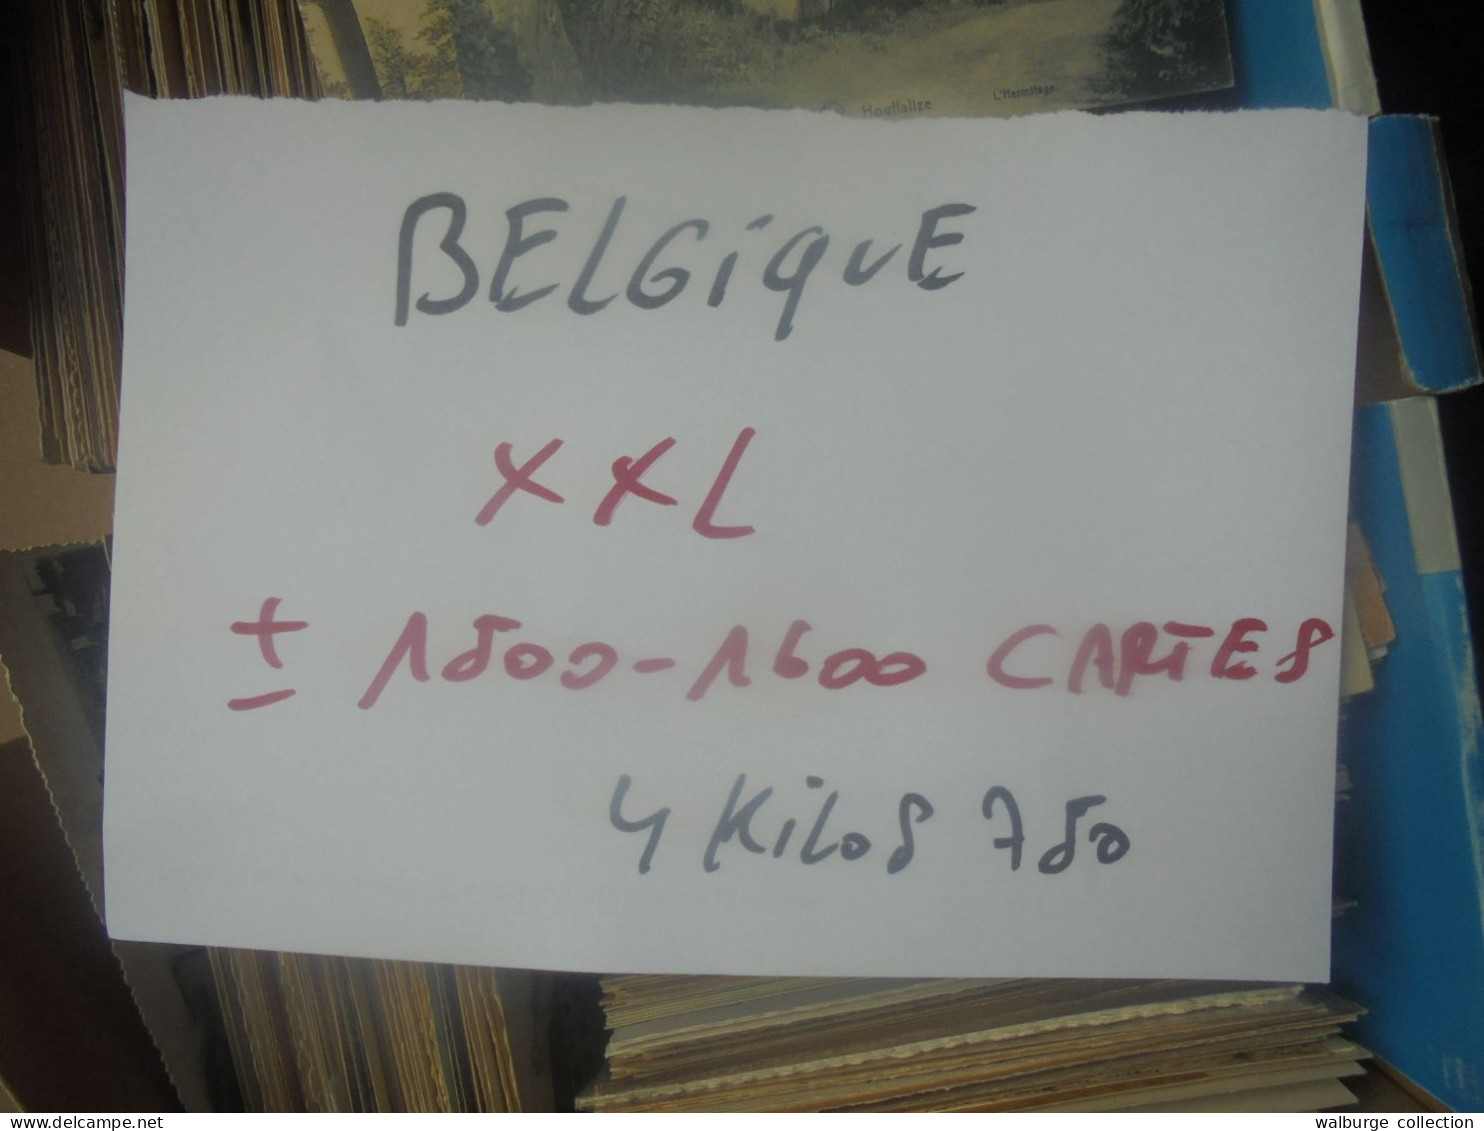 +++BELGIQUE BEAU LOT XXL ! ENVIRON 1500-1600 CARTES (Pas de côte Belge) MAJORITES ANCIENNES+++ 4 KILOS 750 (Lire ci-bas)